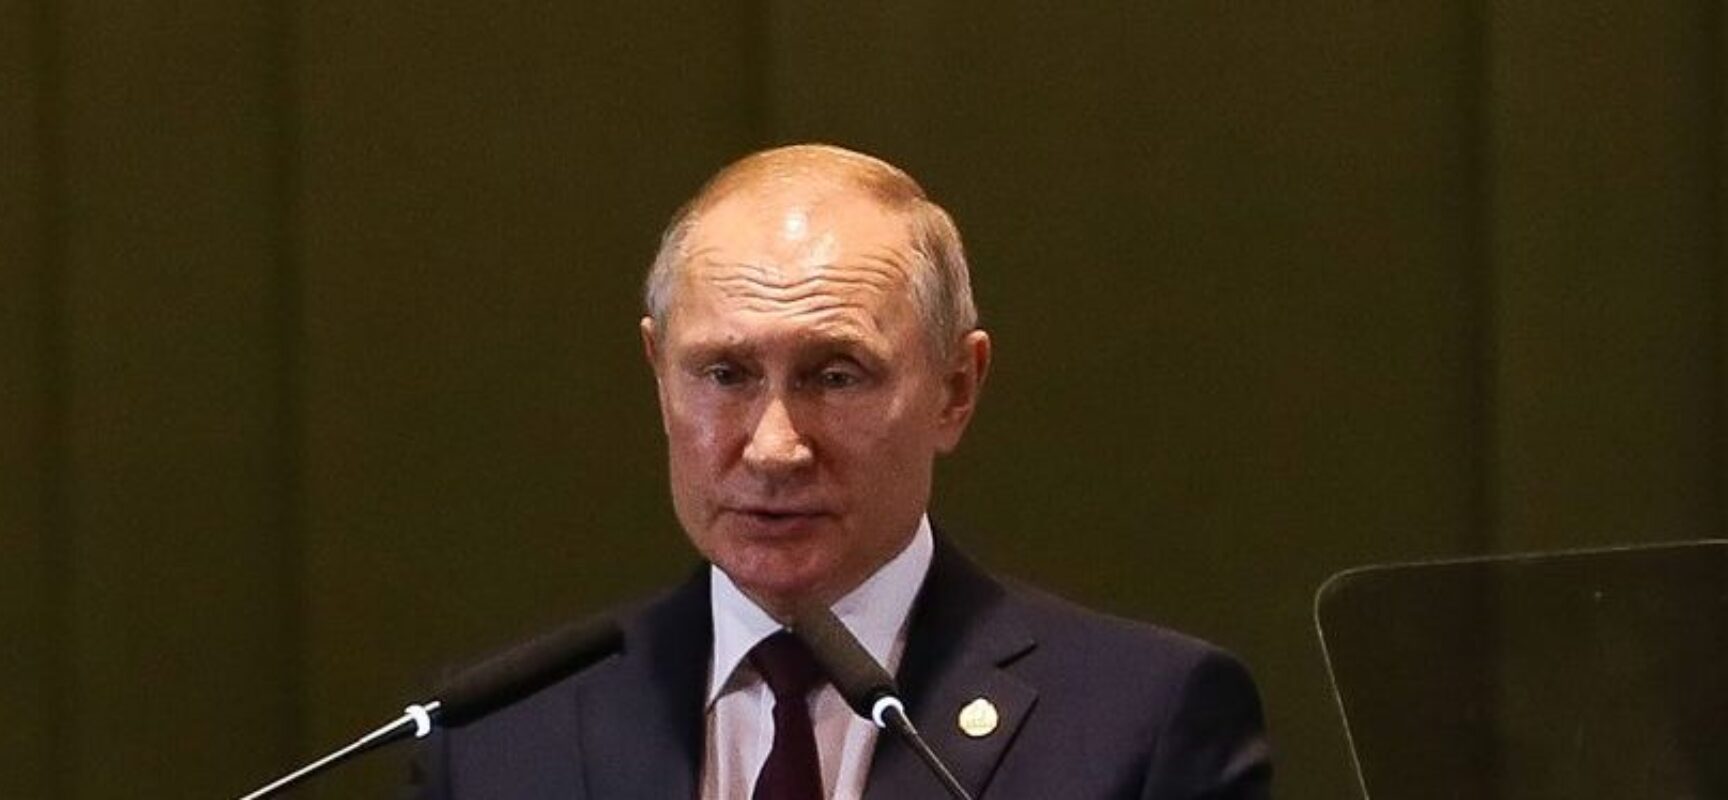 Putin assina decreto para aumentar tamanho das Forças Armadas russas